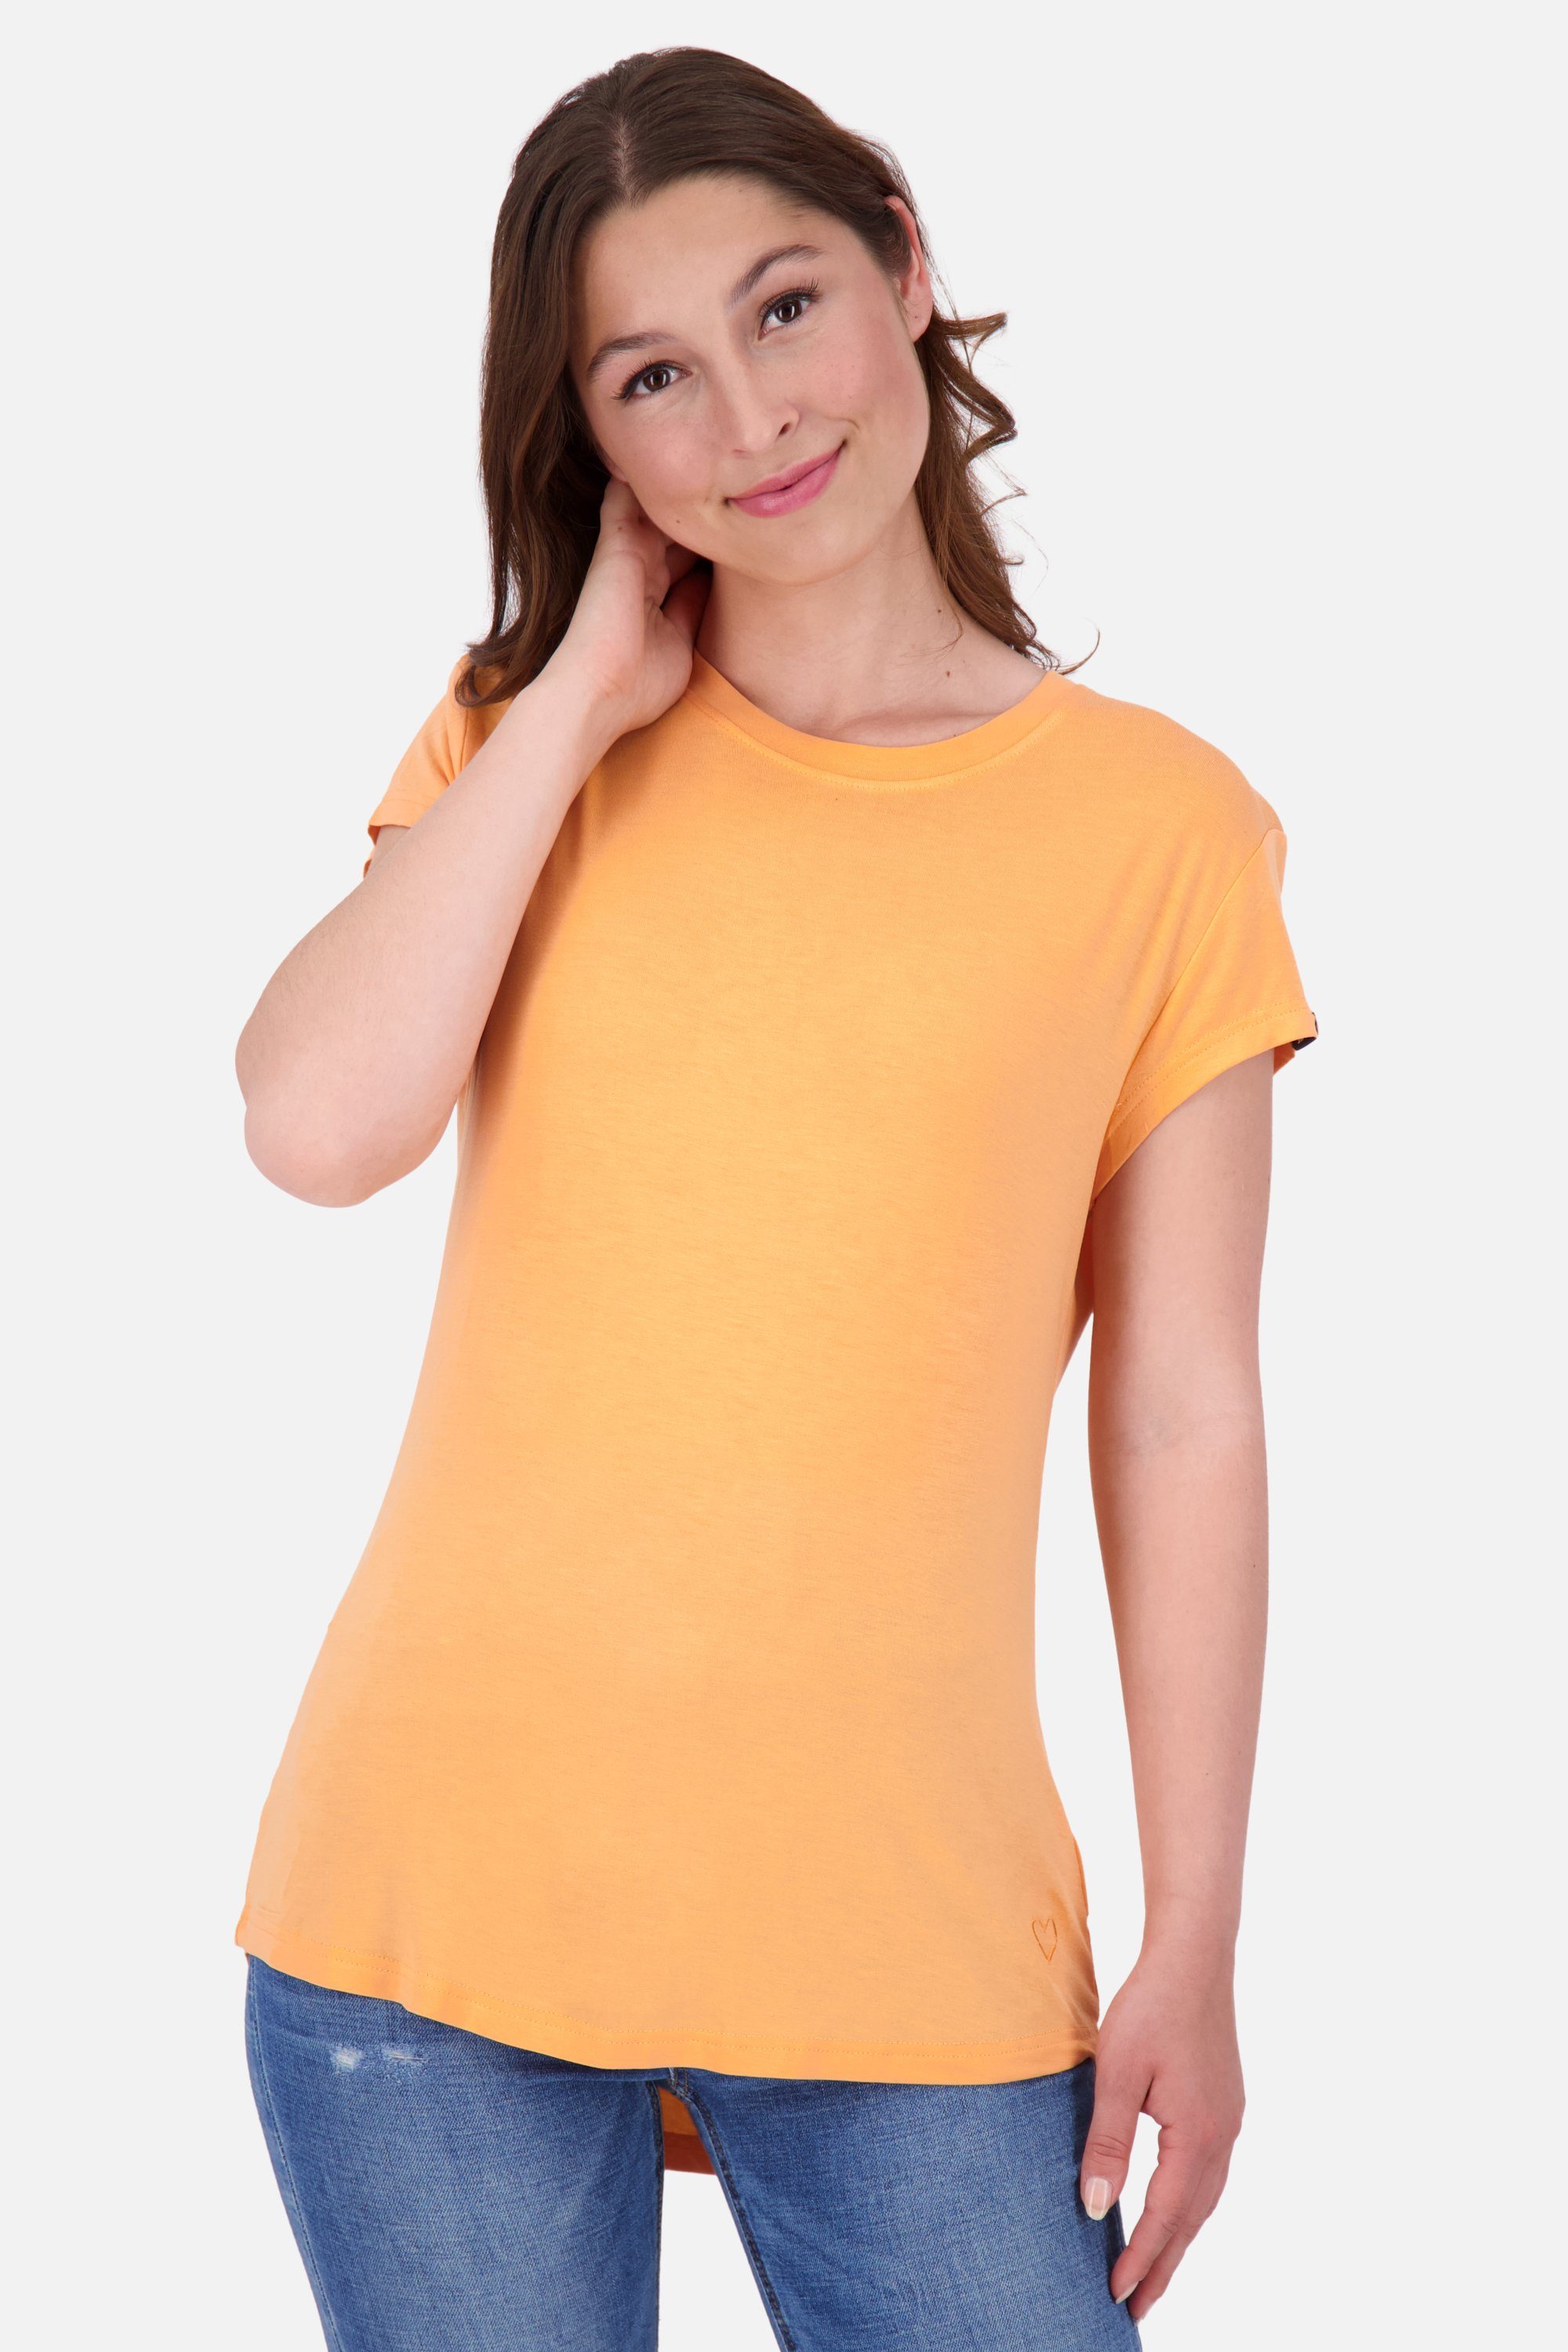 [Versand täglich außer an Feiertagen] Alife & Kickin Rundhalsshirt MimmyAK tangerine Shirt Damen A Shirt Kurzarmshirt